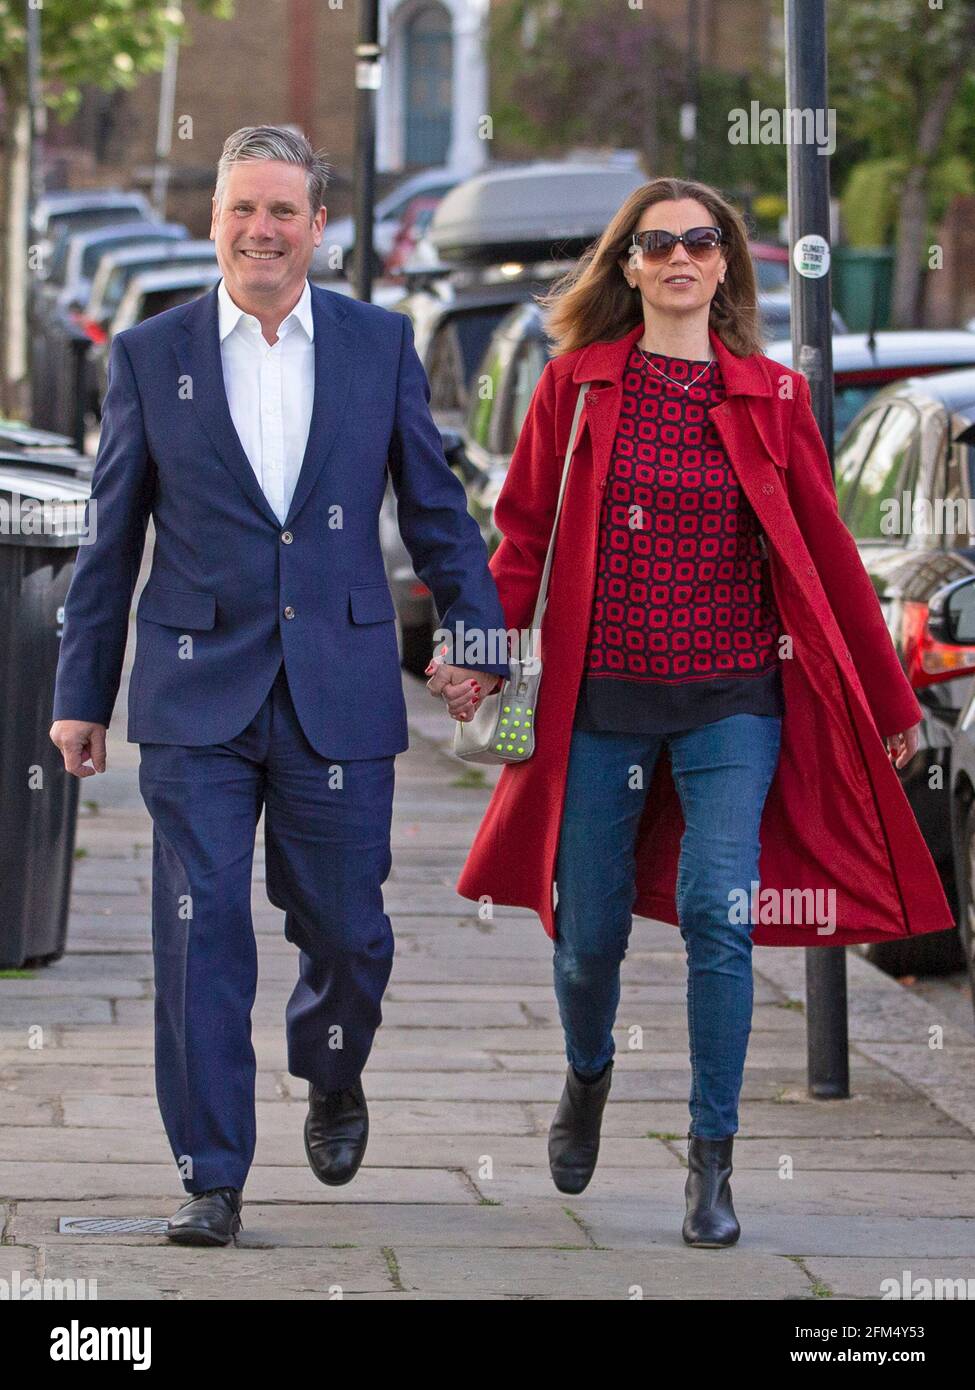 Le chef du travail Sir Keir Starmer et sa femme Victoria quittent leur bureau de scrutin local le 6 mai 2021, dans le nord de Londres, au Royaume-Uni Banque D'Images